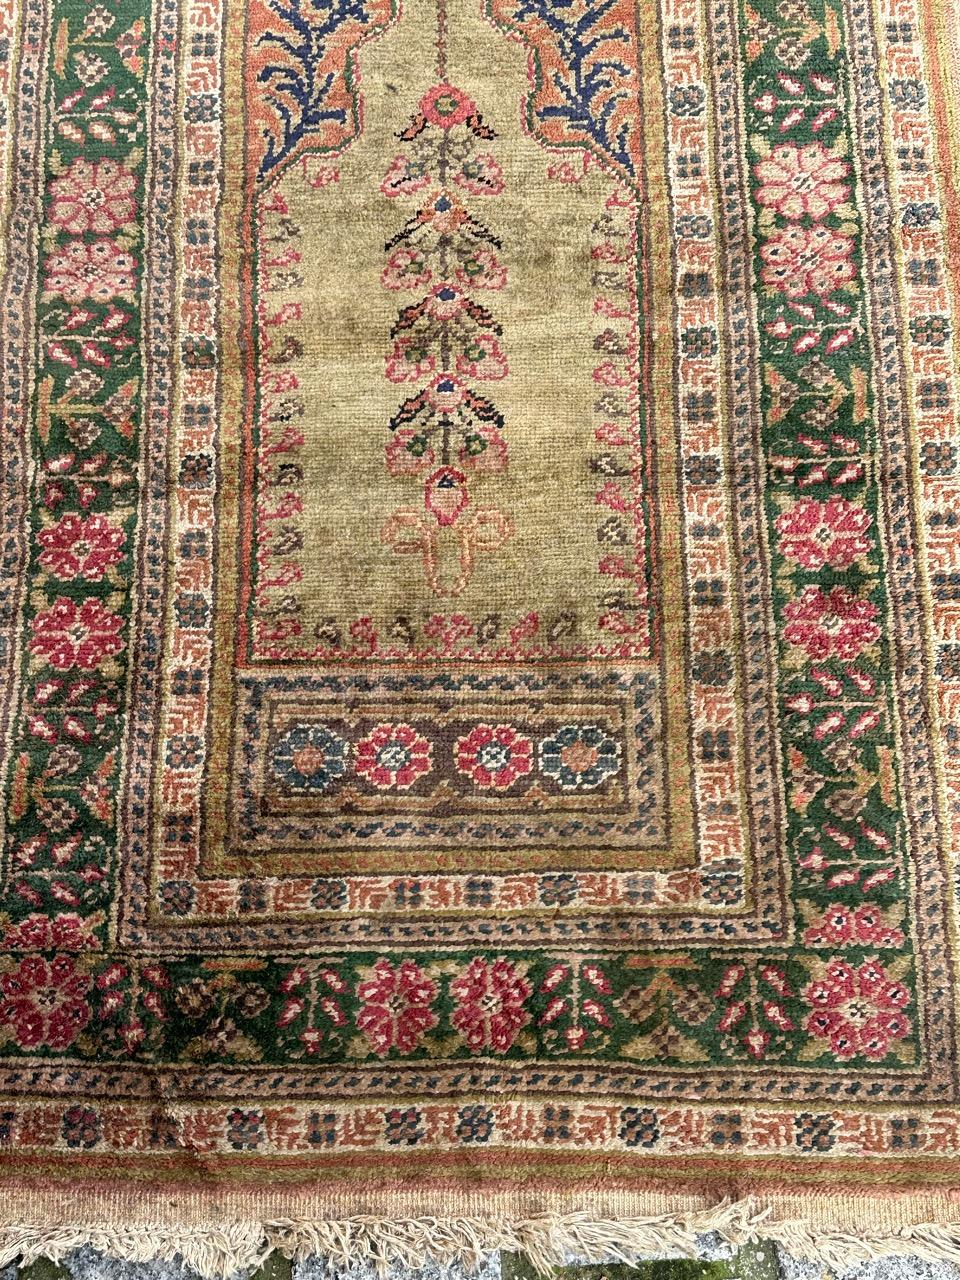 Hübscher türkischer Kayseri-Teppich im Vintage-Stil mit schönem Mihrab-Muster und schönen Farben mit einem grünen Feld mit blauem, orangefarbenem und rosa Muster, vollständig handgeknüpft mit Seide auf Baumwollbasis.

✨✨✨
